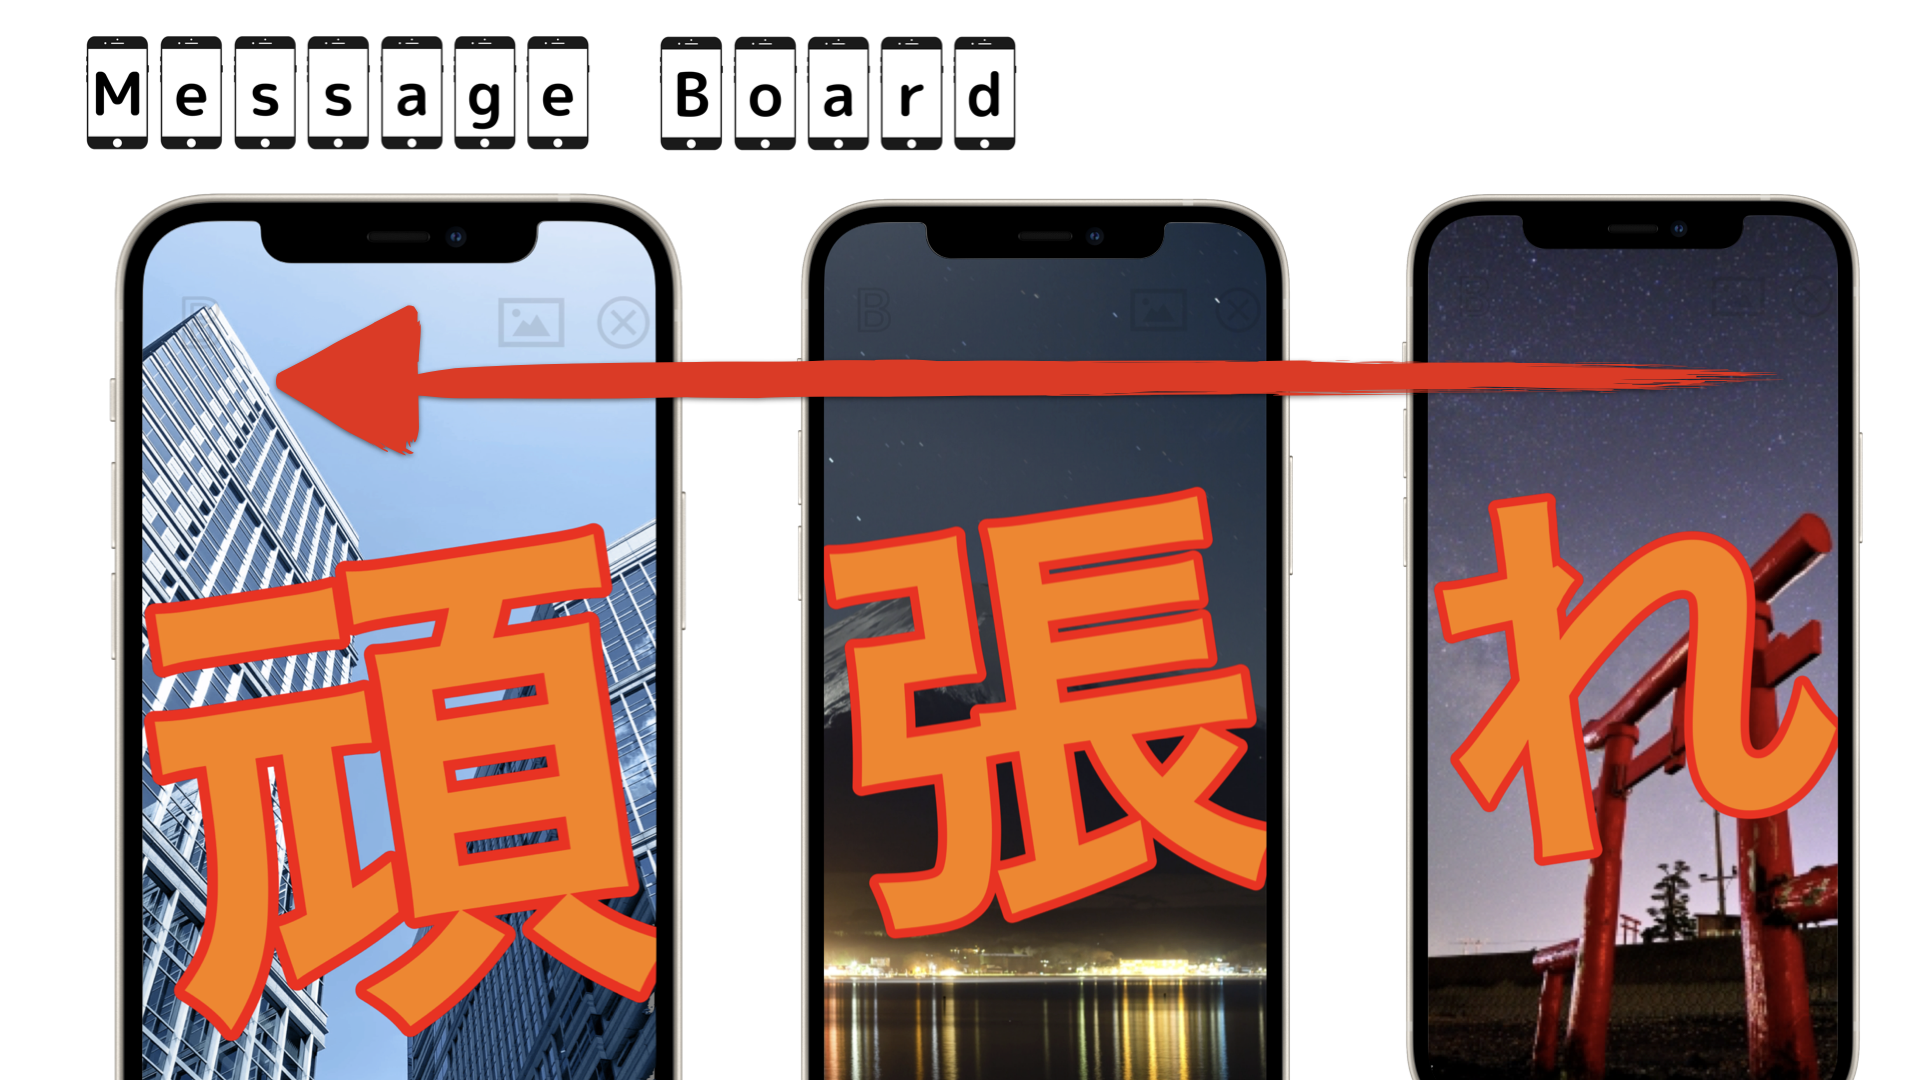 私たちのスマホが電光掲示板に Iphone Ipadを並べて流動メッセージが作成できるアプリ Message Board をリリース 応援メッセージ が3stepで作れる 松尾伸明のプレスリリース